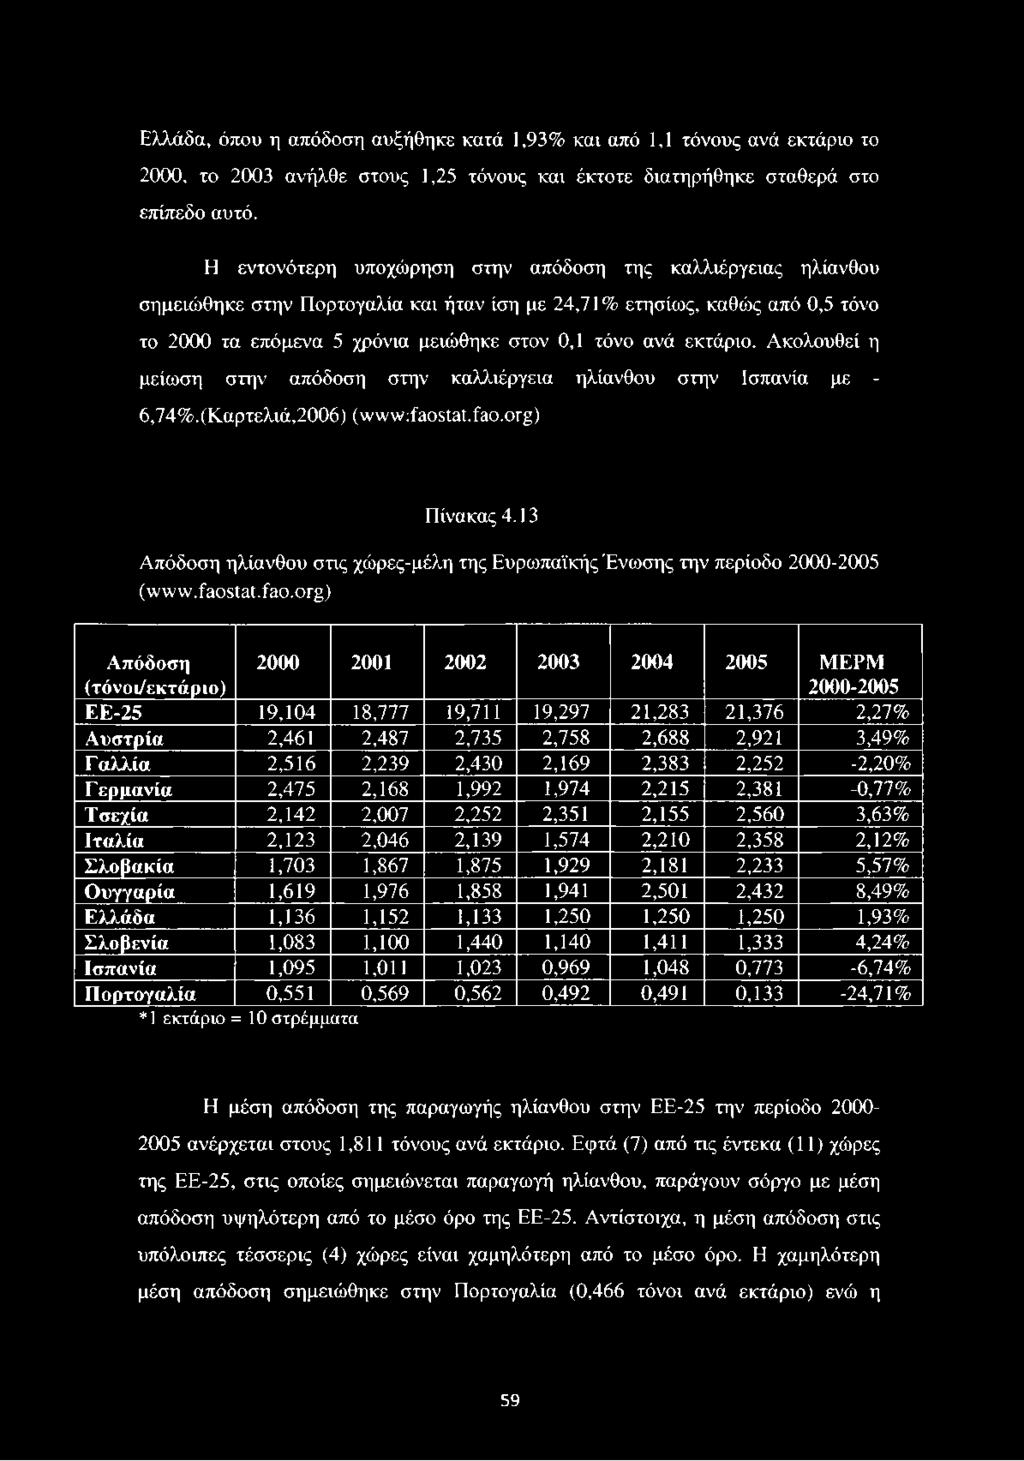 εκτάριο. Ακολουθεί η μείωση στην απόδοση στην καλλιέργεια ηλίανθου στην Ισπανία με - 6,74%.(Καρτελιά,2006) (ινιννν^οείεί.ίηο.ο^) Πίνακας 4.